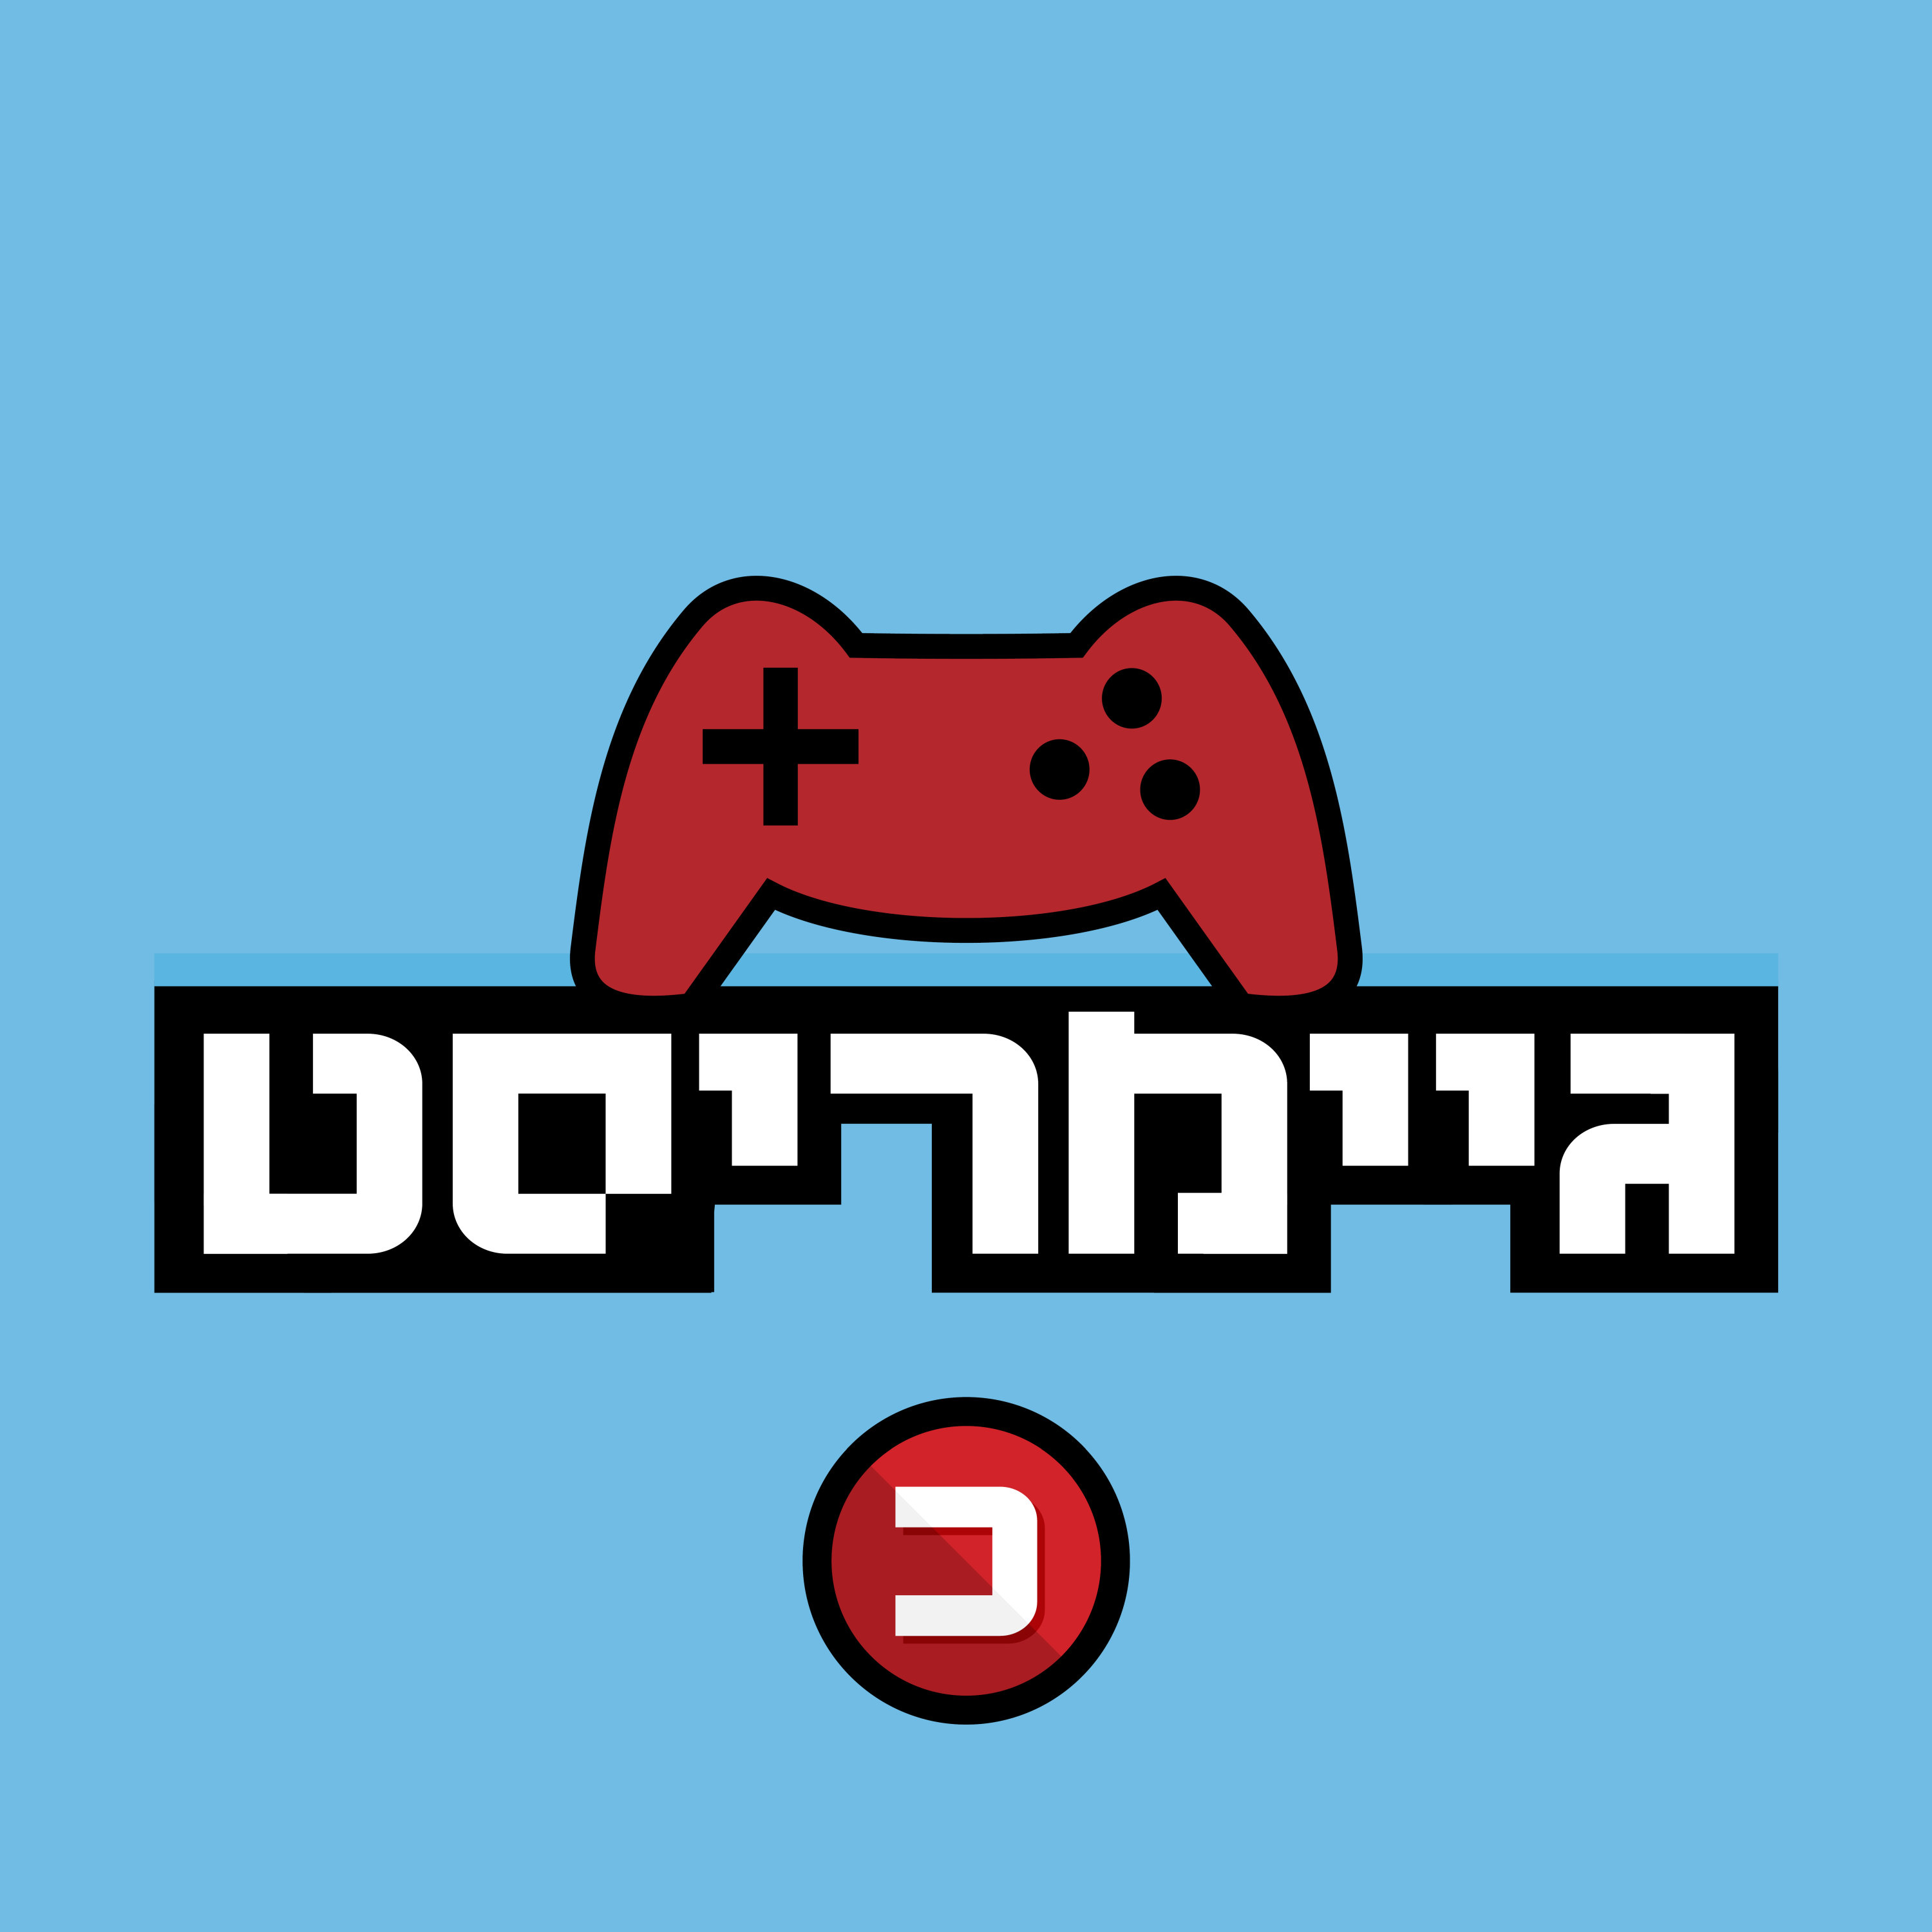 בעתיד כולם ייצרו תוכן למשחקים - ואוברוולף הישראלית רוצה להוביל את המהפכה